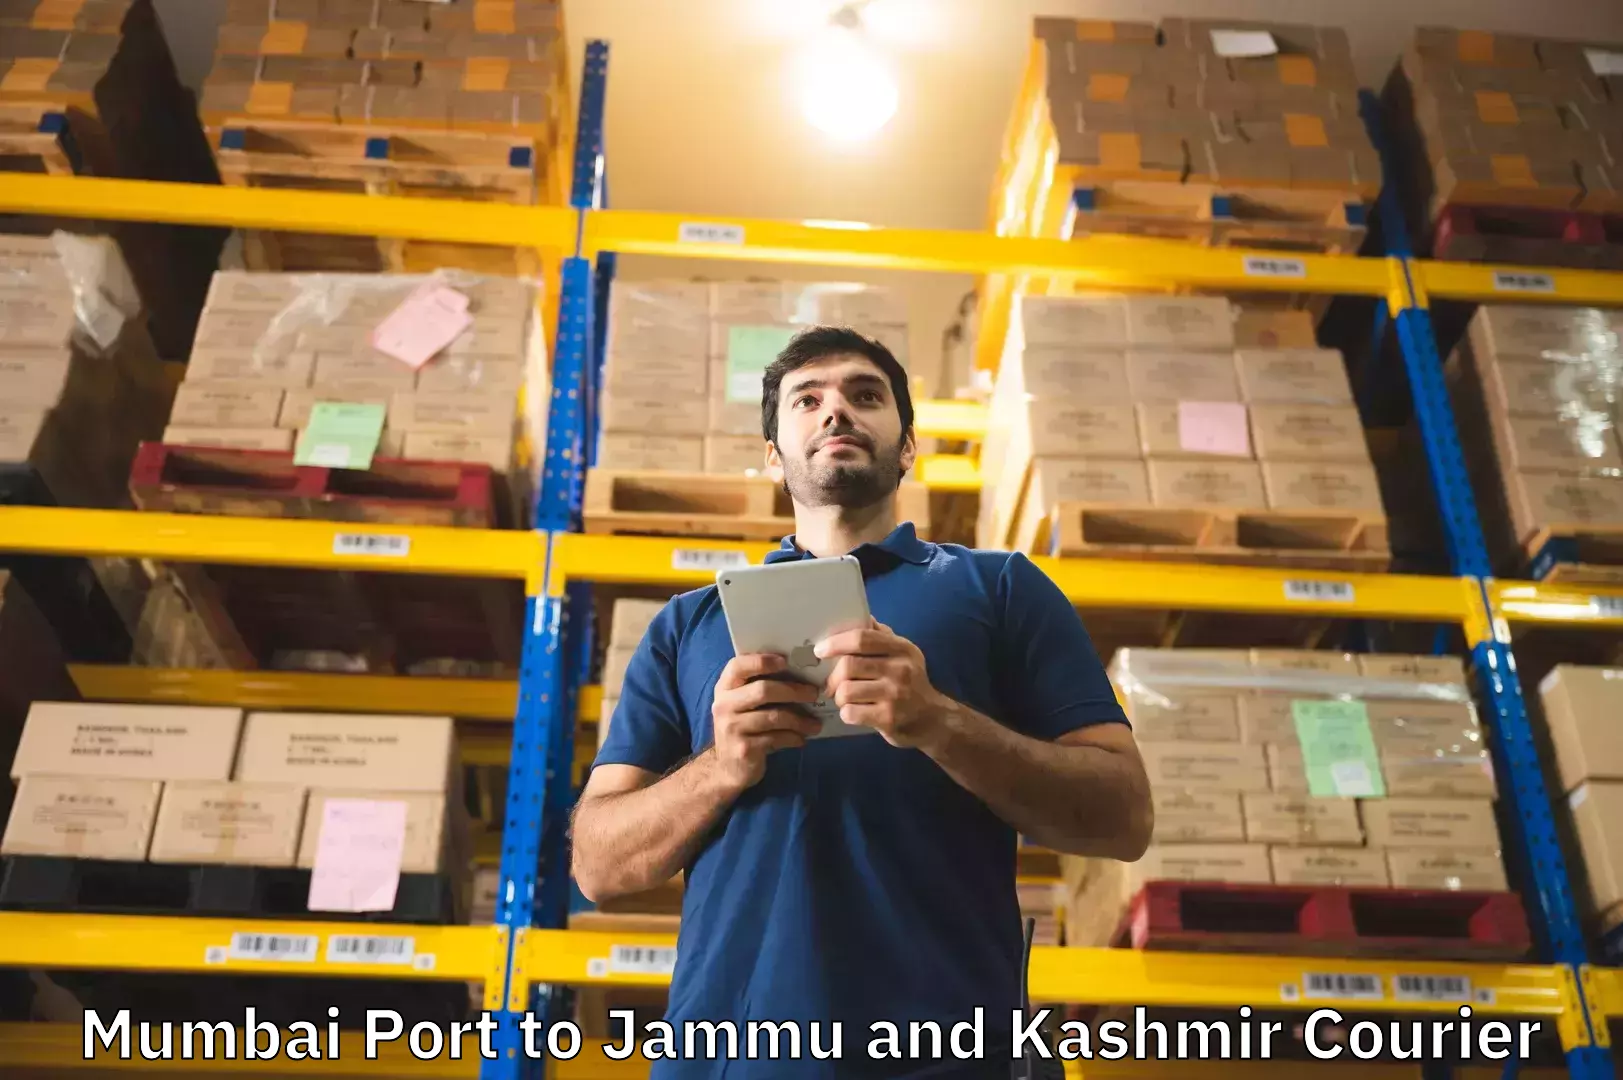 Doorstep luggage collection Mumbai Port to Jammu and Kashmir